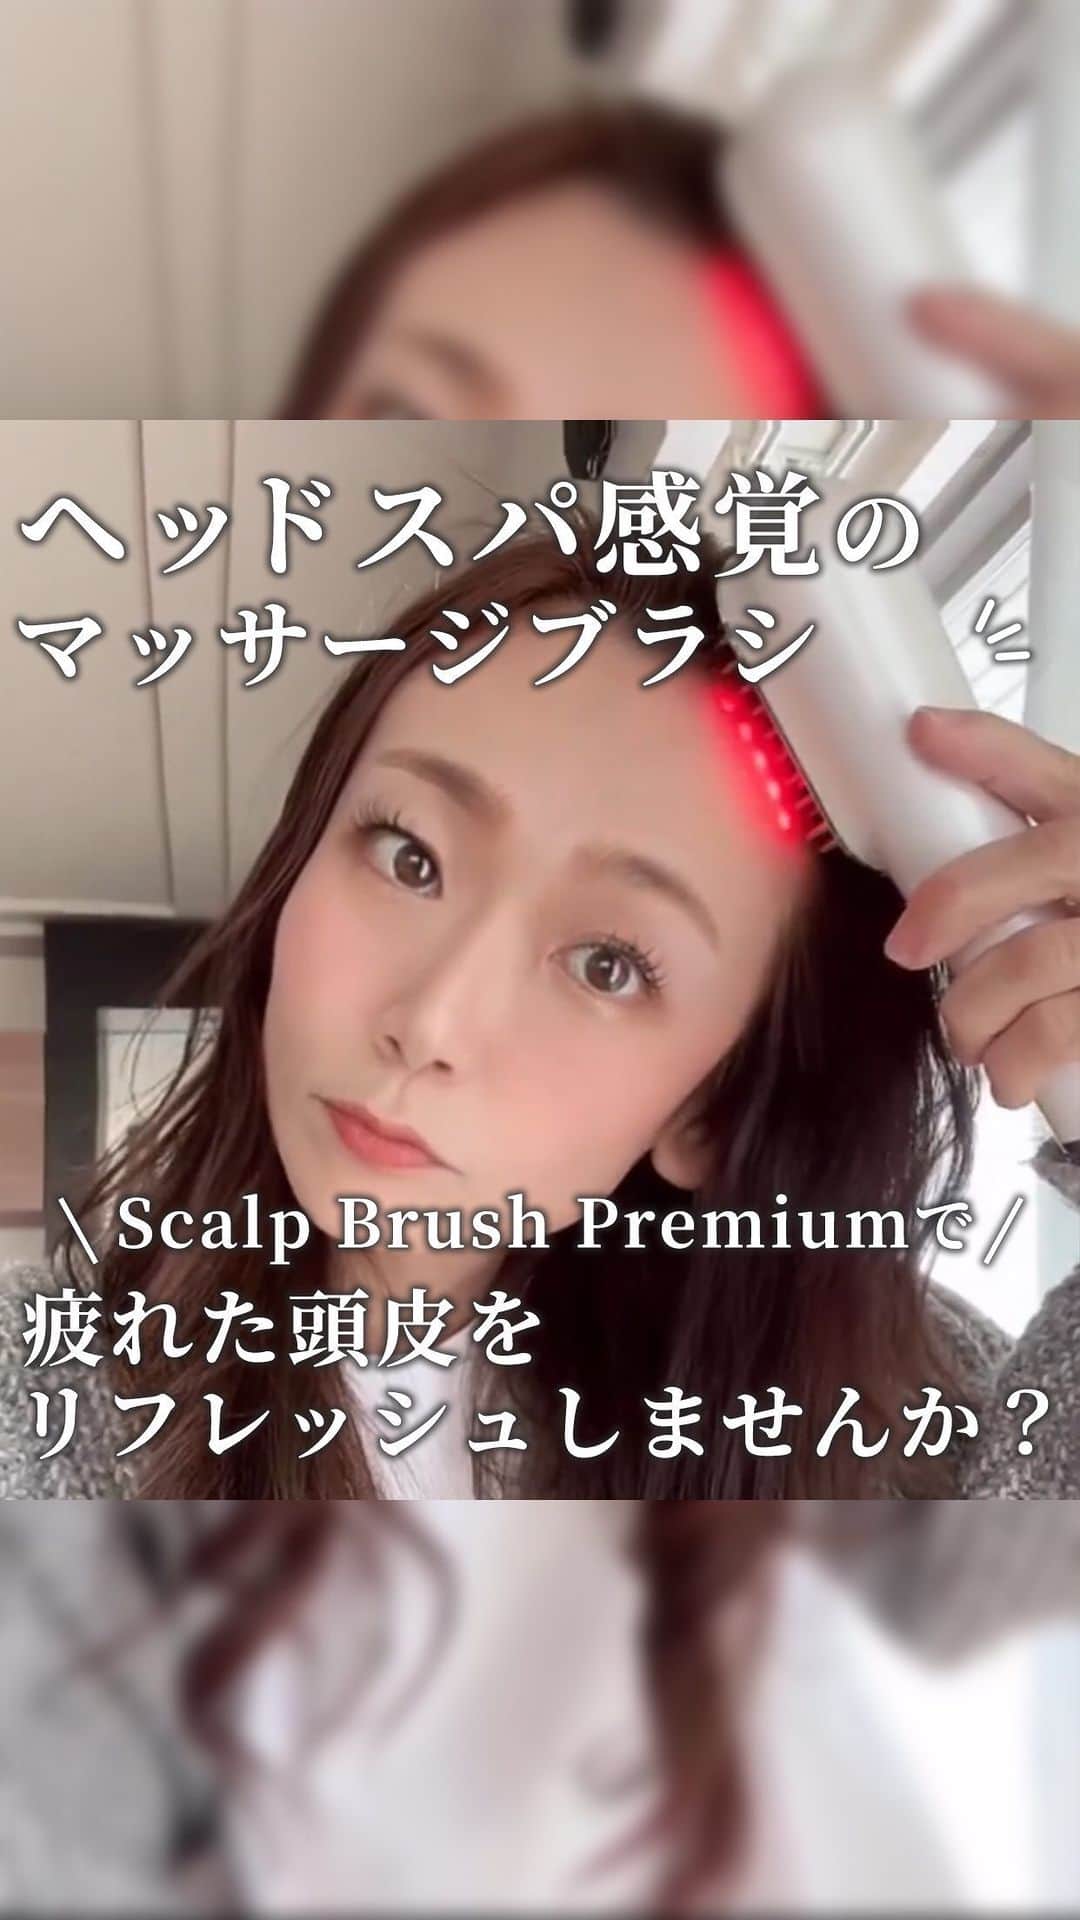 ヘアーサロン ソシエ [公式] のインスタグラム：「本日はとっておきアイテム「Scalp Brush Premium」をご紹介✨  頭皮ケアはつやつや美髪への一歩として 見逃せない項目ですよね😢  「Scalp Brush Premium」はEMSとRF（ラジオ波）のどちらも搭載💡 お肌を引き上げて血行促進やターンオーバーのお手伝い♡  さらに、Head mode（頭皮）とFace mode（顔など）を搭載で 頭皮ケアだけでなく、お顔のケアにも使用できちゃう優れもの😲✨  コンパクトなフォルムで持ちやすく、防水機能も搭載なので お風呂上がりにも直ぐに使えちゃう！  気になる方はぜひチェックしてみてくださいね👀  こちらの素敵な動画は @s.c.n.9 さんの投稿です♪ ————————————————— <SINCE1960> 時代に先駆けて美容業界をリードし「トータルビューティー」を提供し続けてきたソシエヘアー。その歴史は、創業者、高橋孝が開業した1店のヘアーサロンからはじまります。今後も、ソシエの原点である「ヘアーサロン」としての誇りを持ち続け、プロフェッショナルな技術・おもてなしをご提供してまいります。多くの女性に楽しんで美しくなる体験してほしい。それがソシエヘアーグループの願いです。 ————————————————— #ソシエヘアー #ジャックモアザン #ソシエ #ヘアー #美容院 #美容室 #サロン #サロンスタイル #サロンモデル #サロモ #スタイル撮影 #モデル募集 #ヘアカット #ヘアサロン #ヘアスタイル #似合わせカラー #似合わせカット #ヘアカラー #トレンドカラー #ヘアカラートレンド #アレンジ #ヘアアレンジ #マッサージブラシ #ヘッドスパ #スカルプケア #EMS #RF #ラジオ波 #美髪 #頭皮ケア」